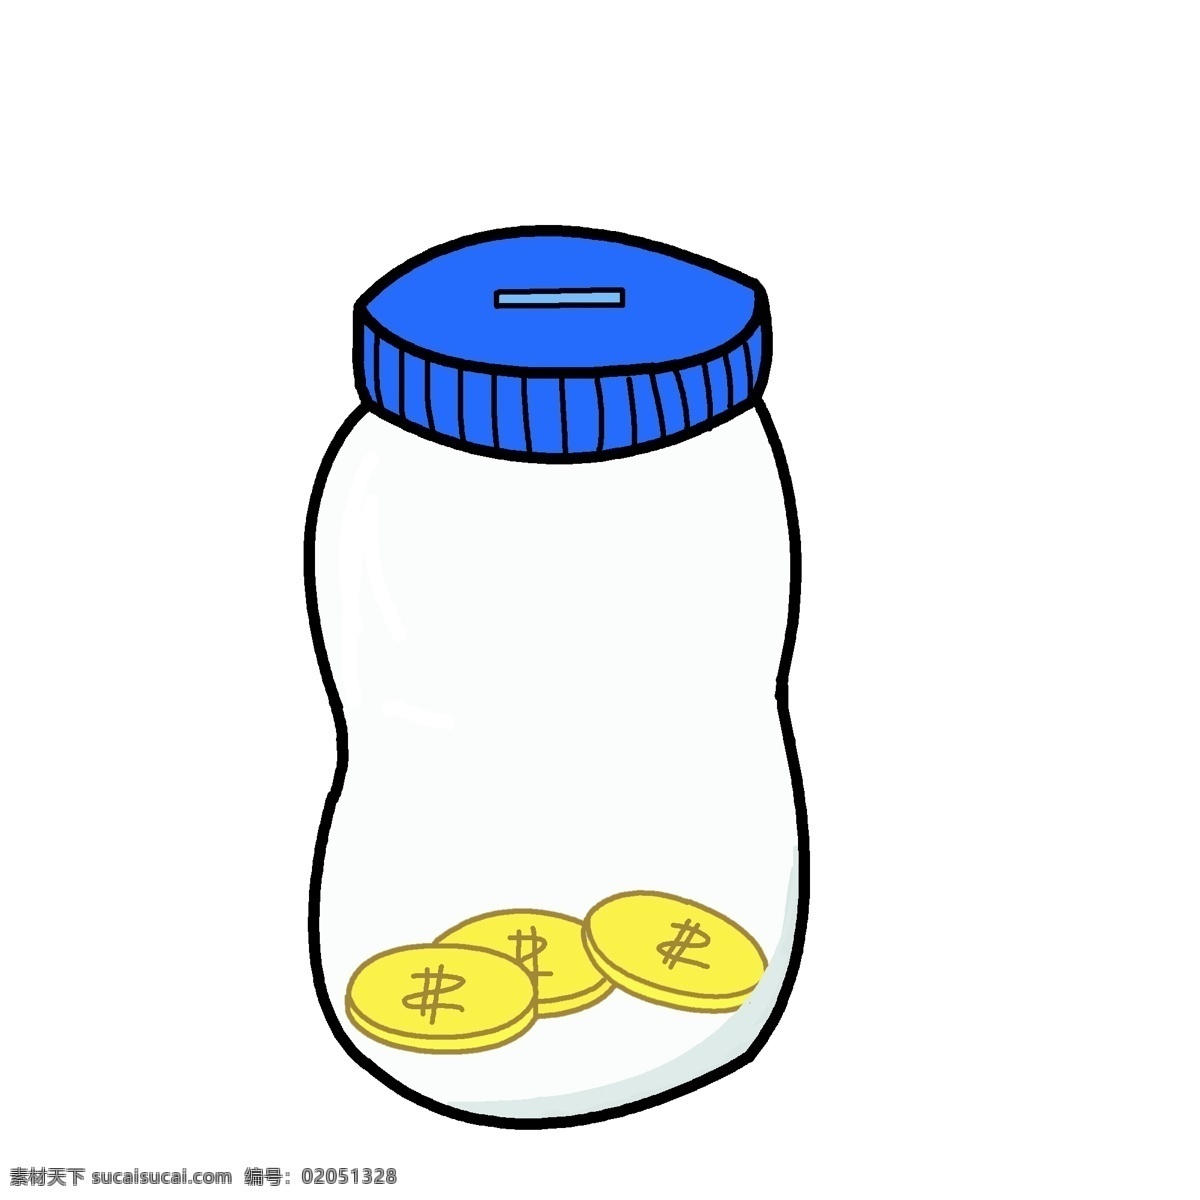 玻璃 瓶子 存钱罐 插画 玻璃瓶子 存钱罐插画 璃瓶子存钱罐 金融 金币 钱币 玻璃容器插图 蓝色